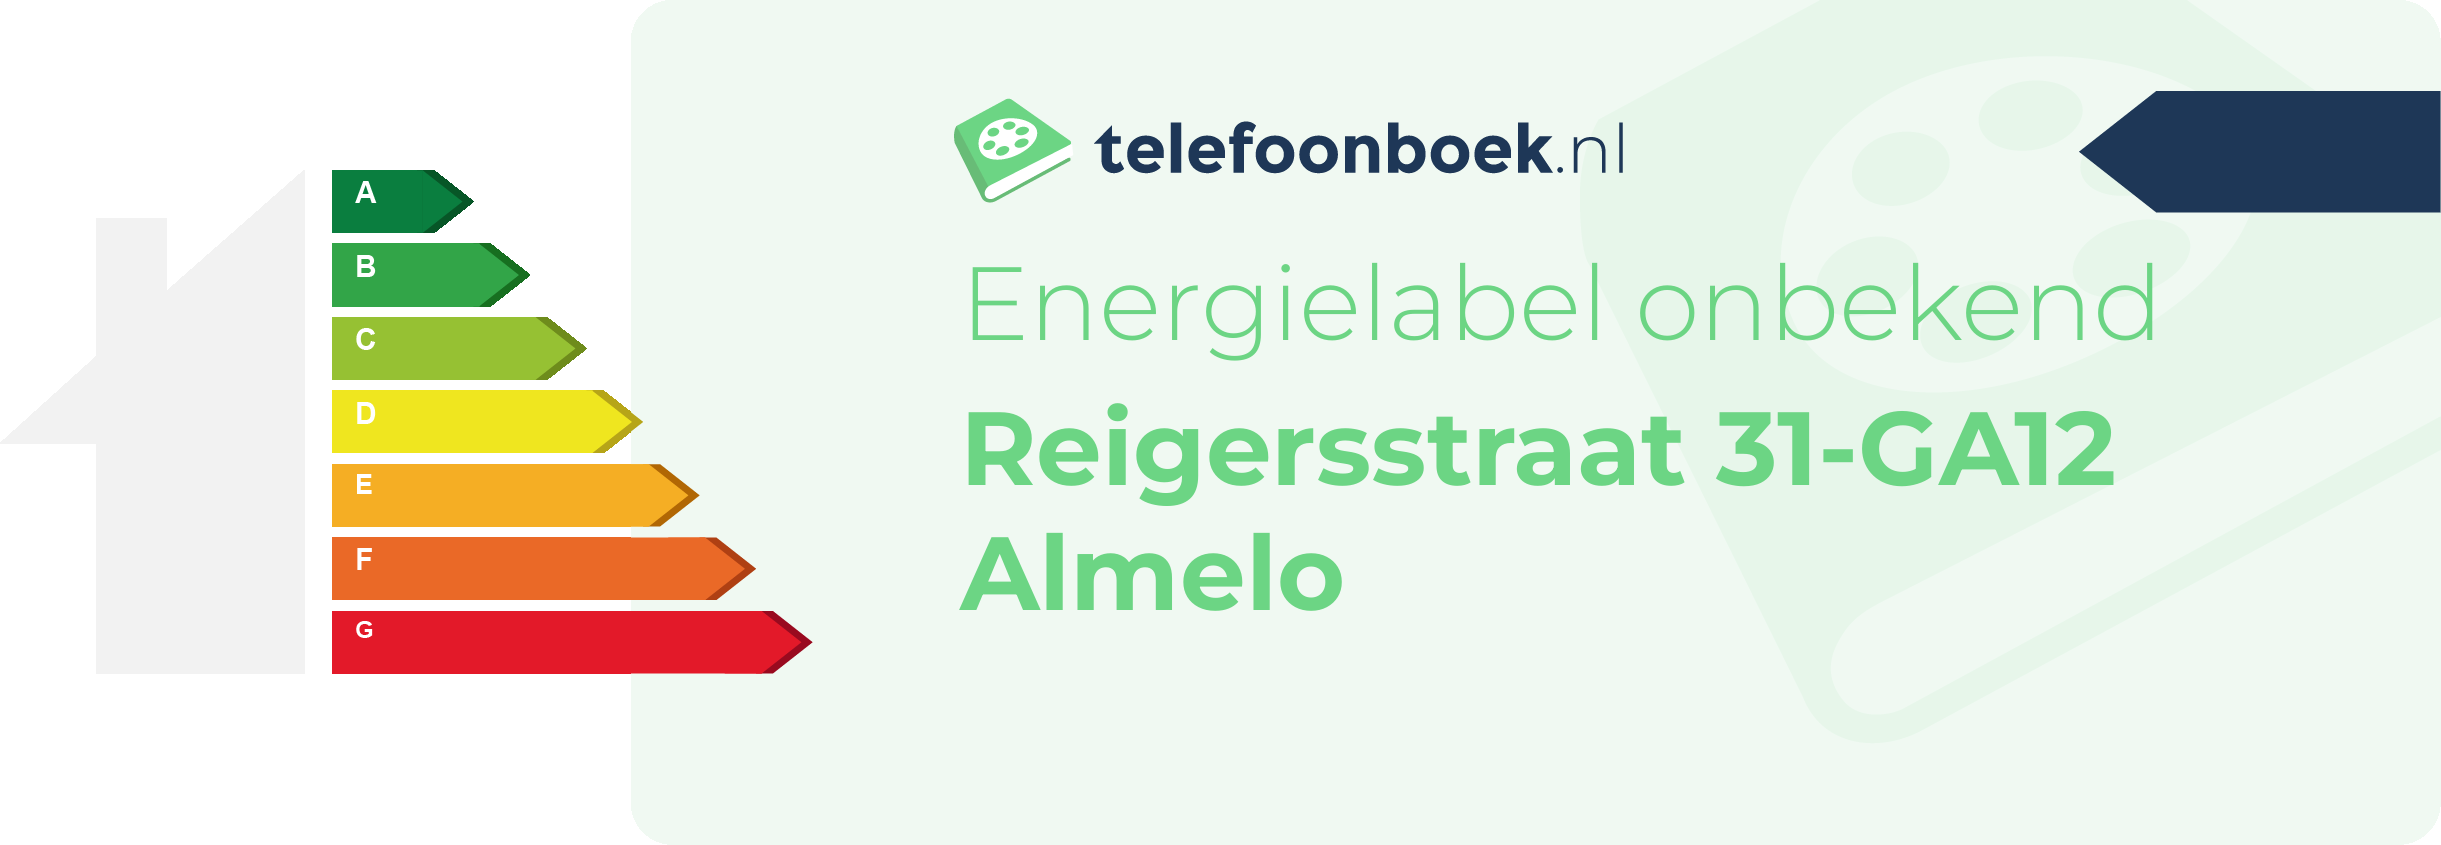 Energielabel Reigersstraat 31-GA12 Almelo